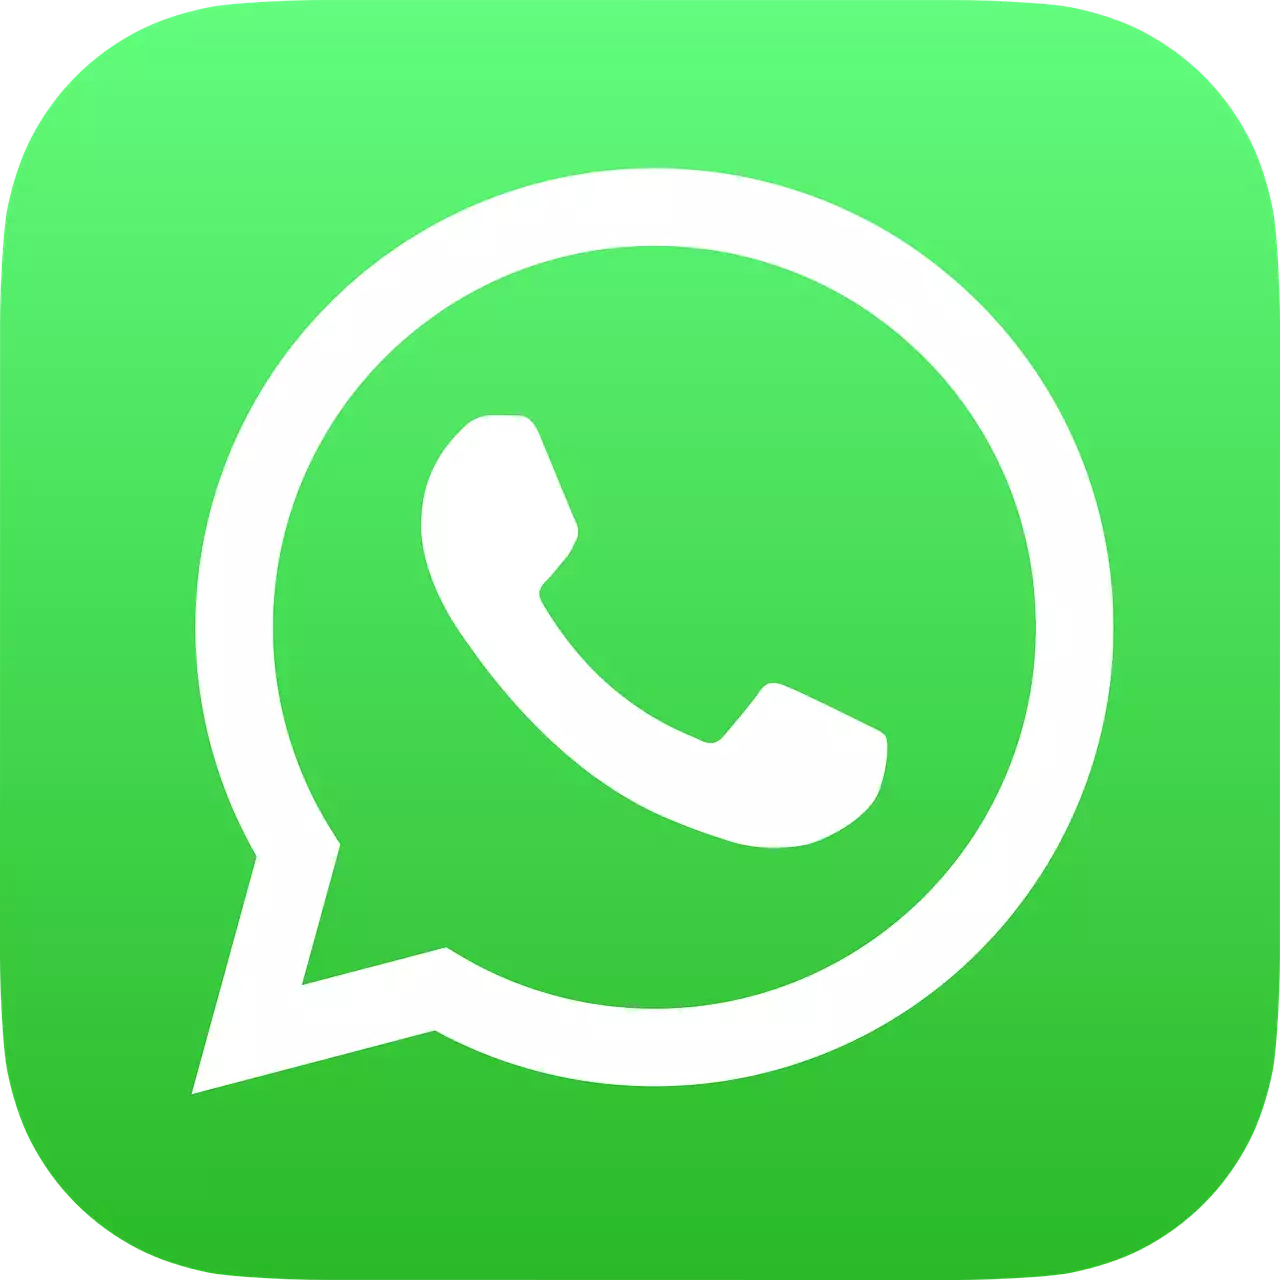 WhatsApp ukarze za odmowę dzielenia się danymi z Facebookiem